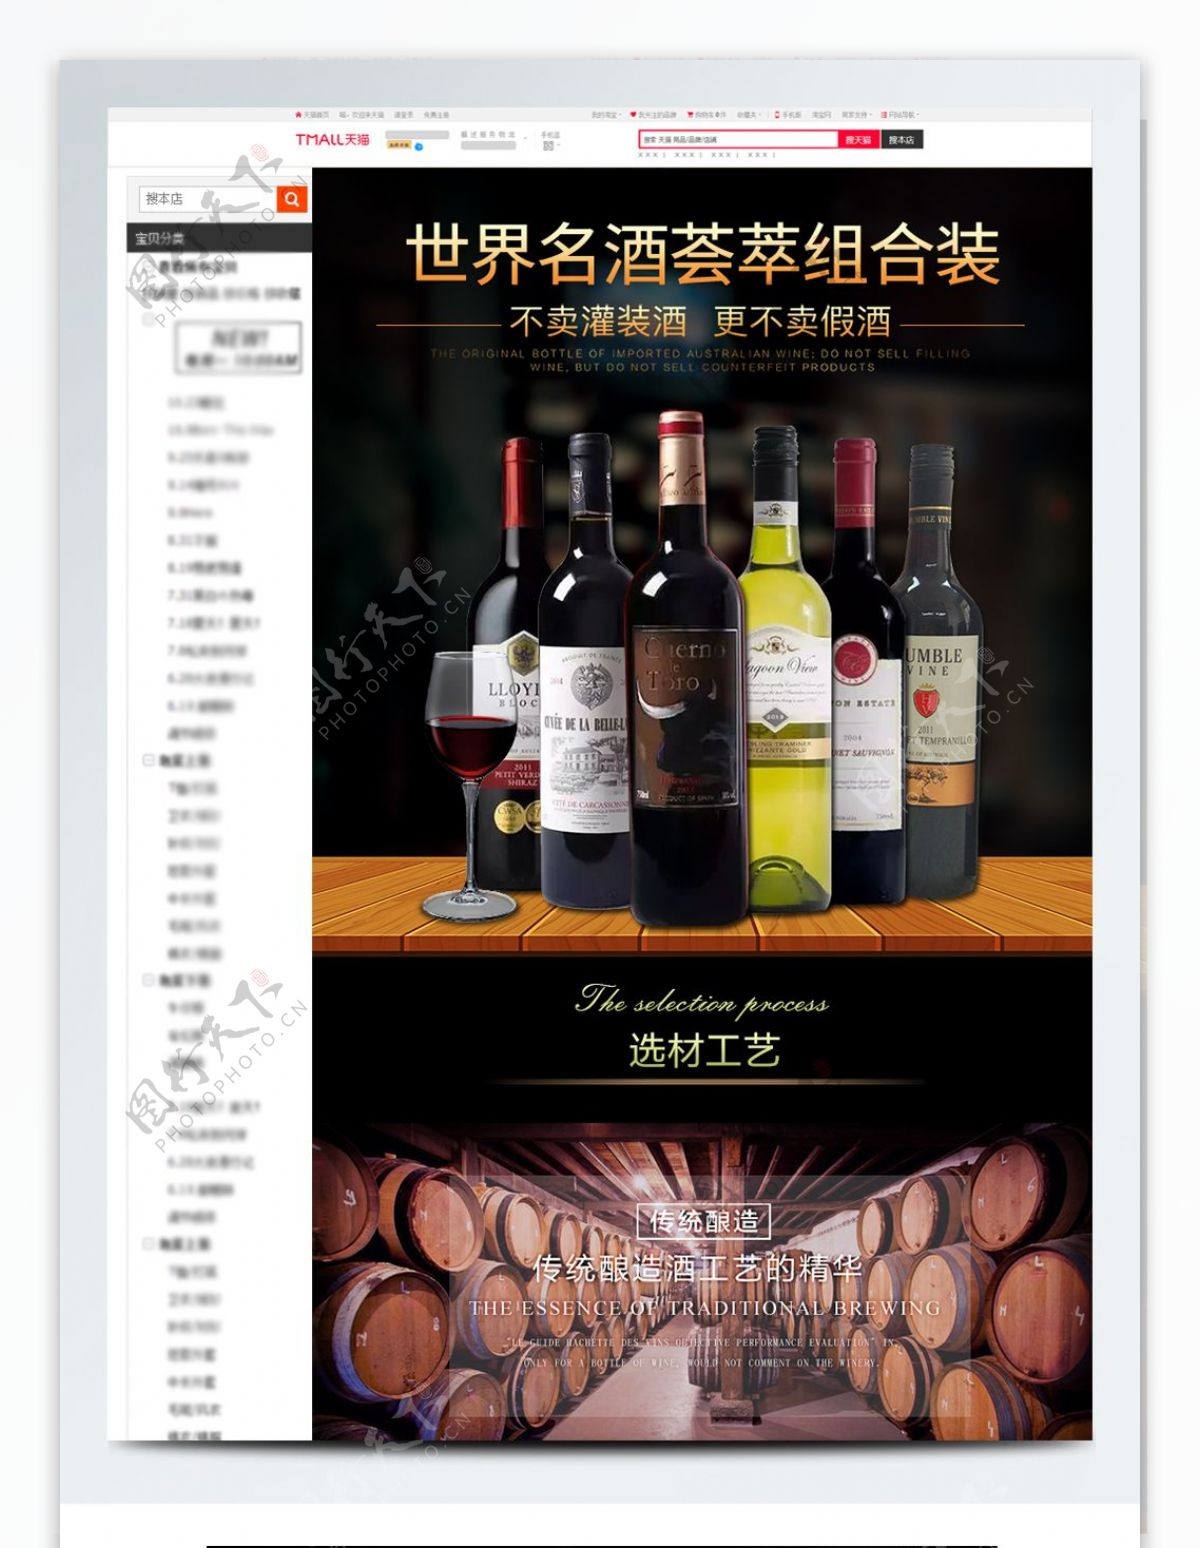 世界名酒荟萃组合装红酒外国产商品详情页